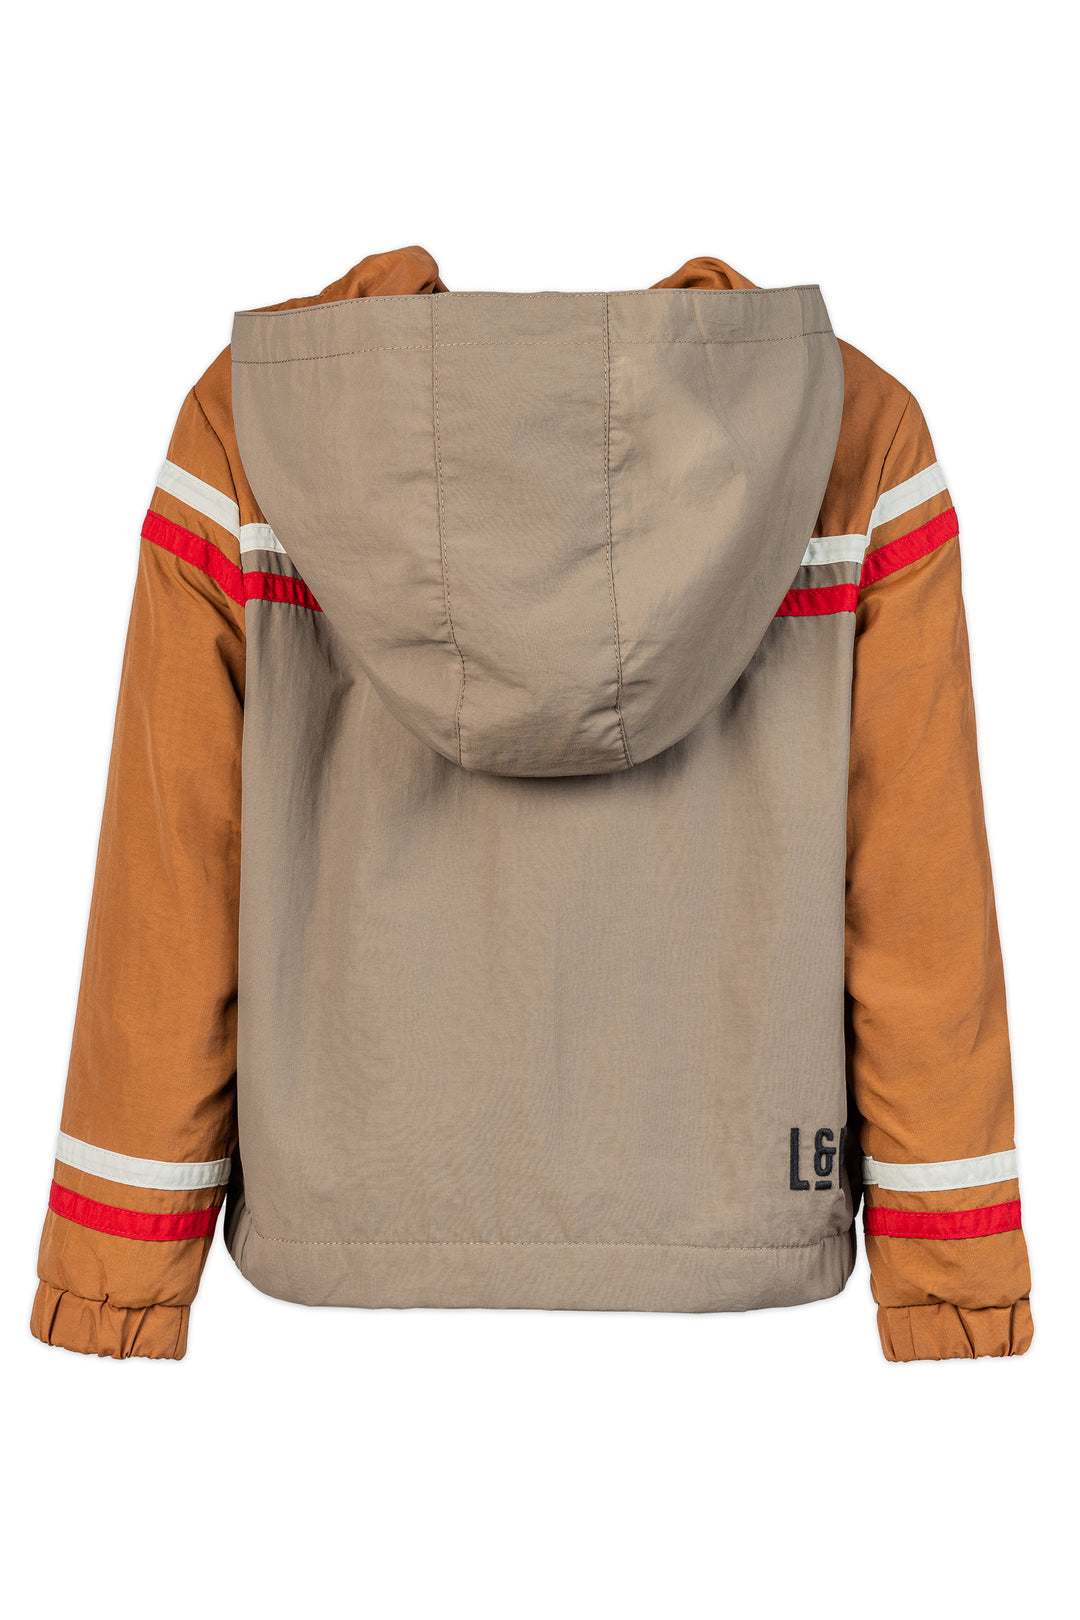 Fleece Lined outwear jacket [123] [Kids]